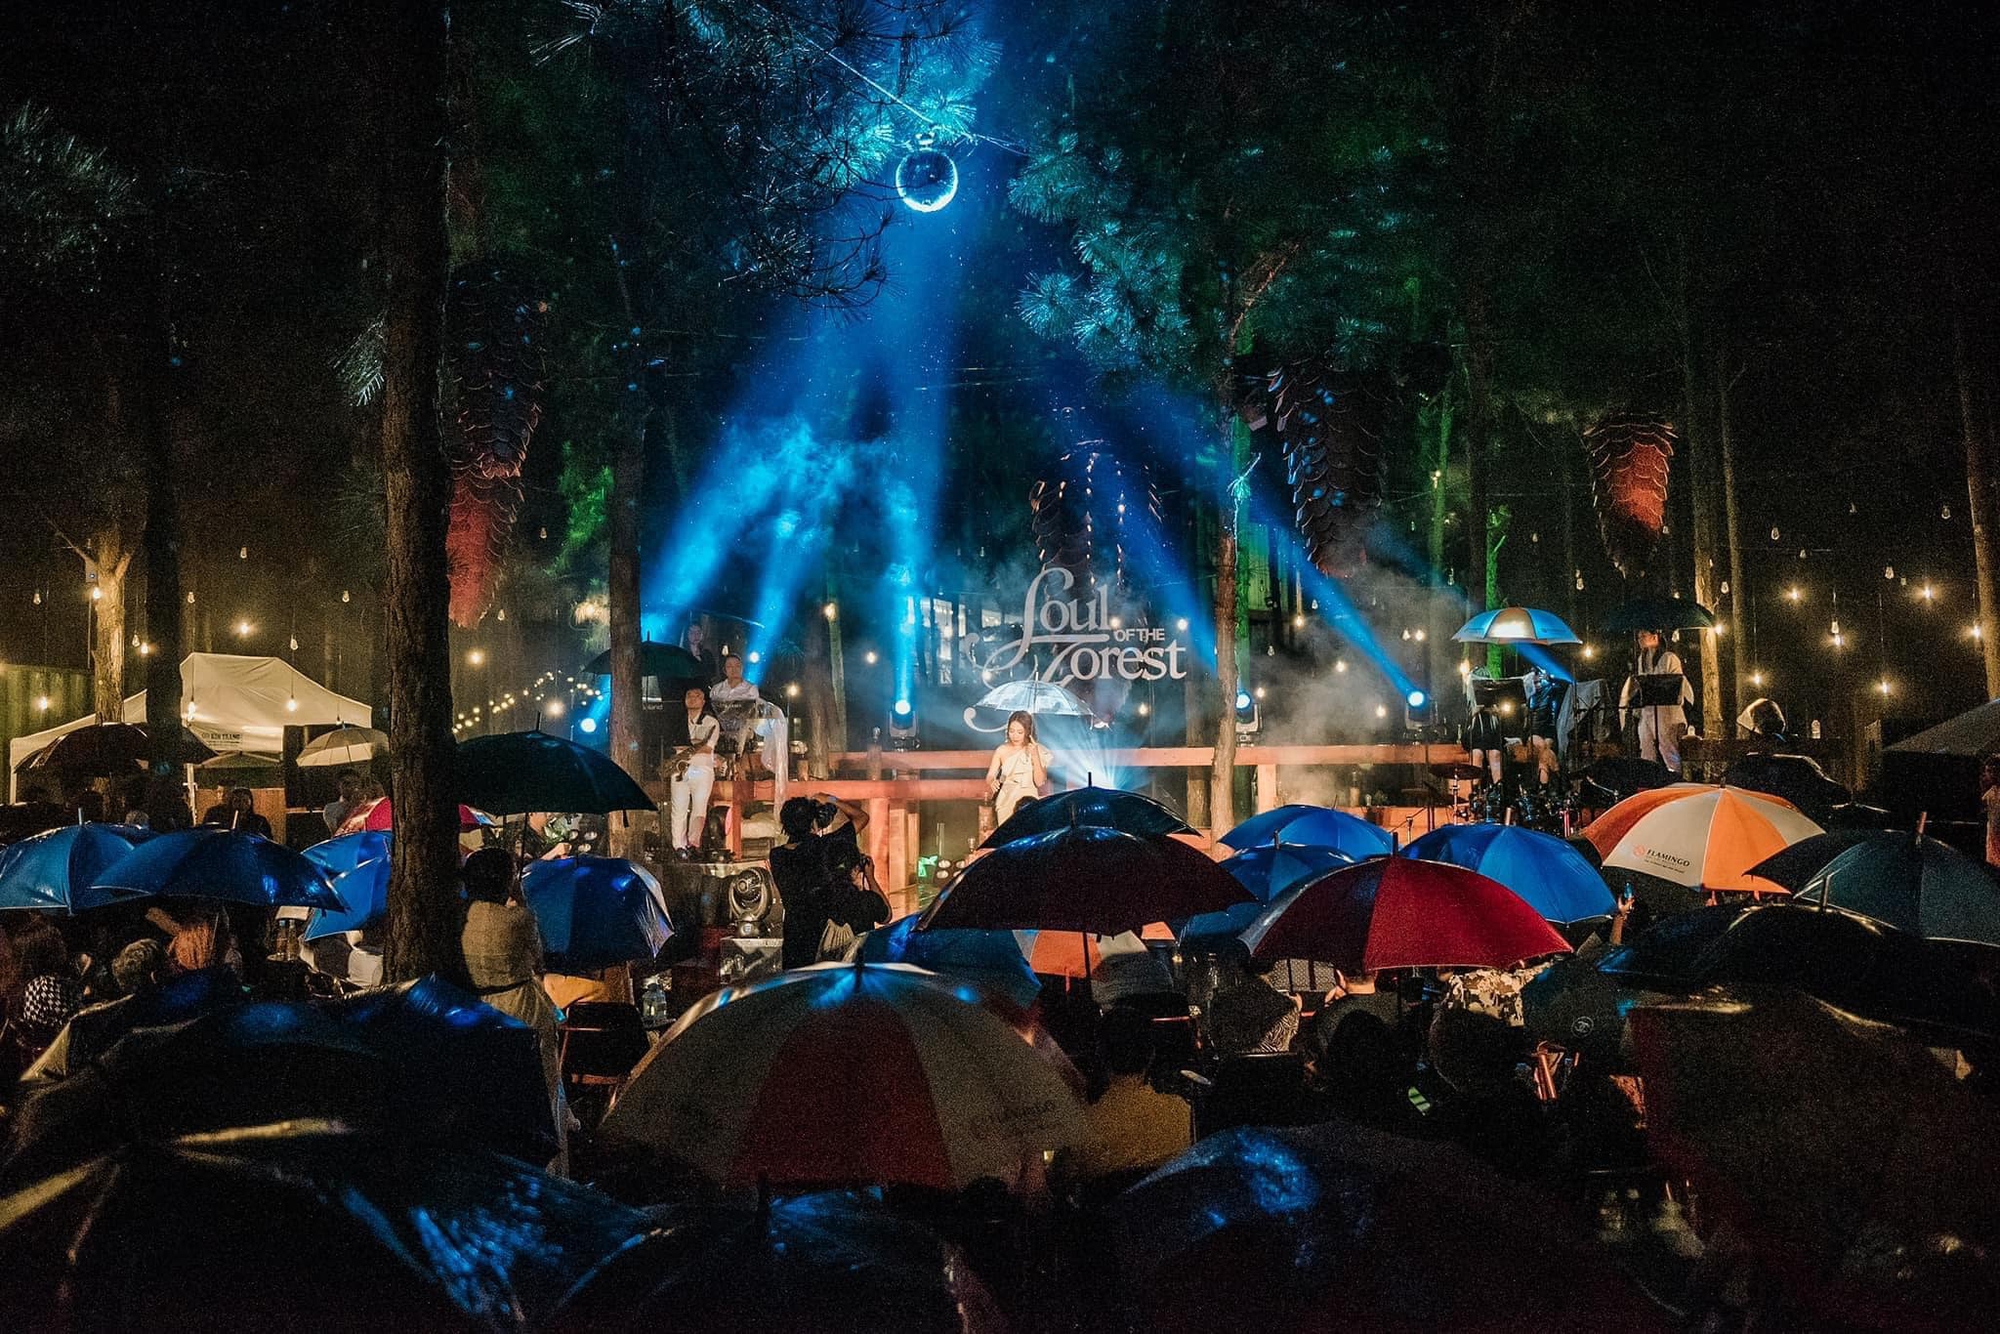 Đi nghe nhạc trong rừng: Trải nghiệm mới lạ và cảm xúc cho người Hà Nội vào dịp cuối tuần - Ảnh 8.